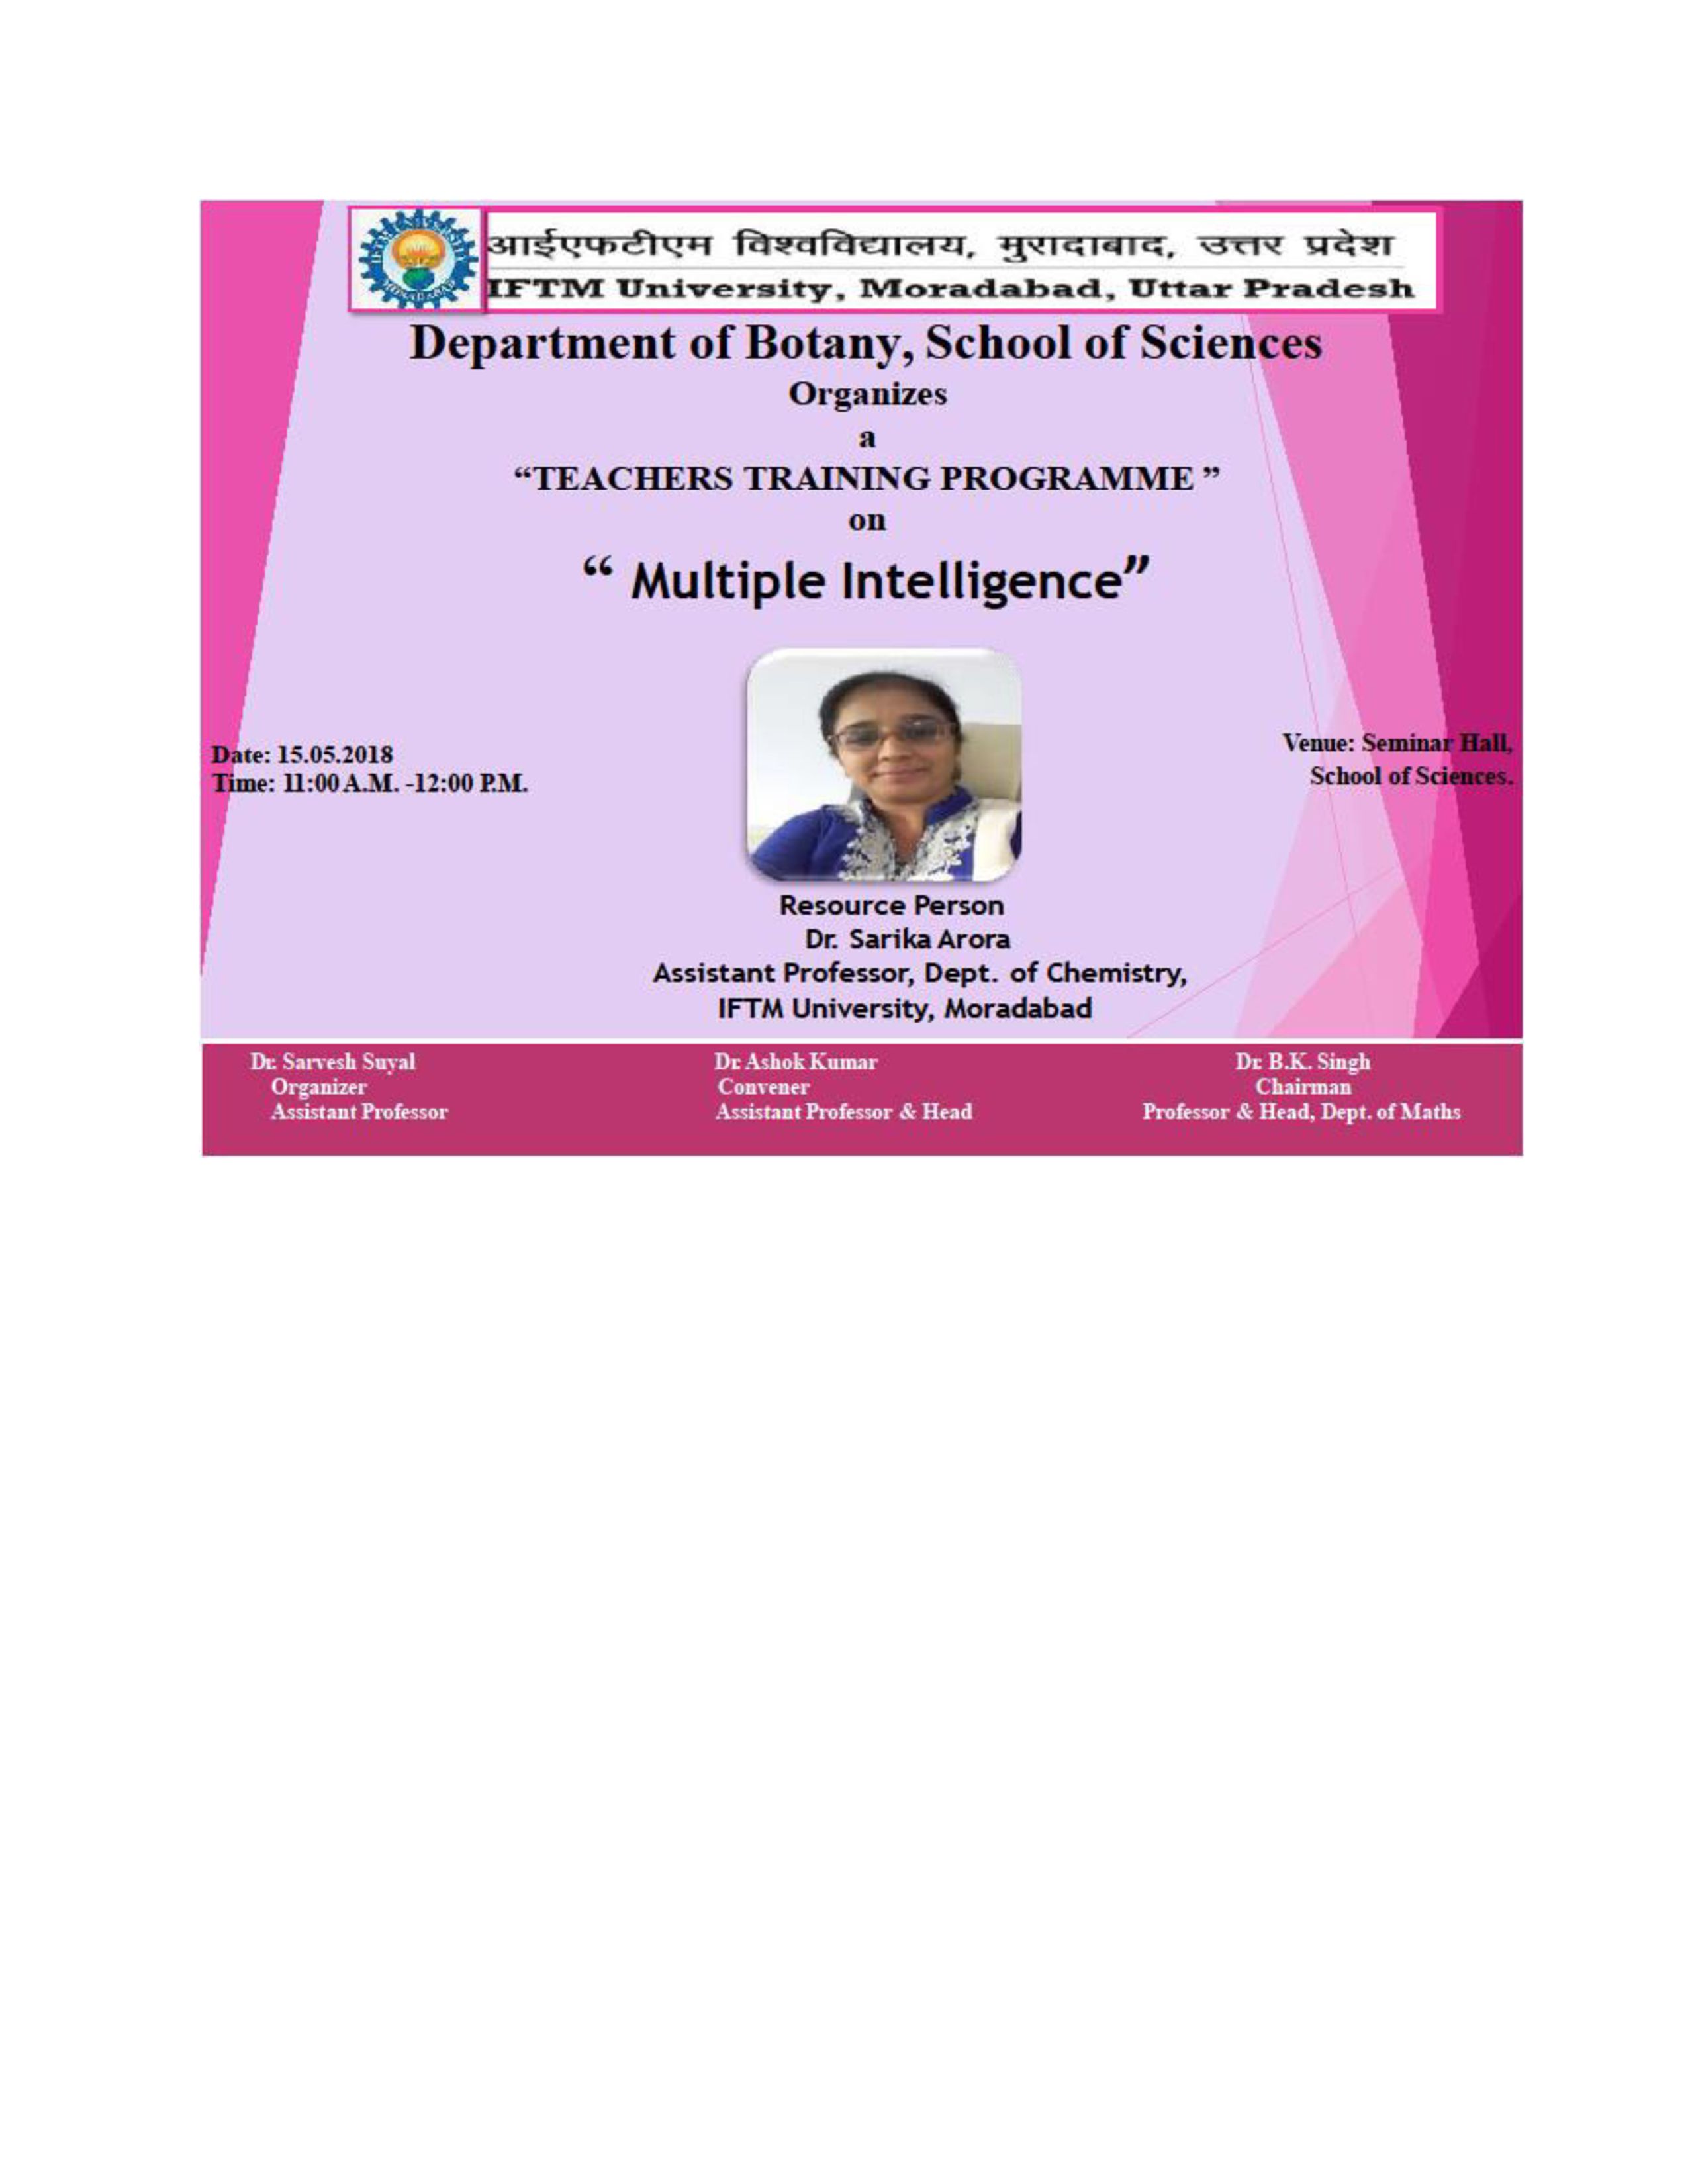 Teachers Training Programme on Multiple Intelligences